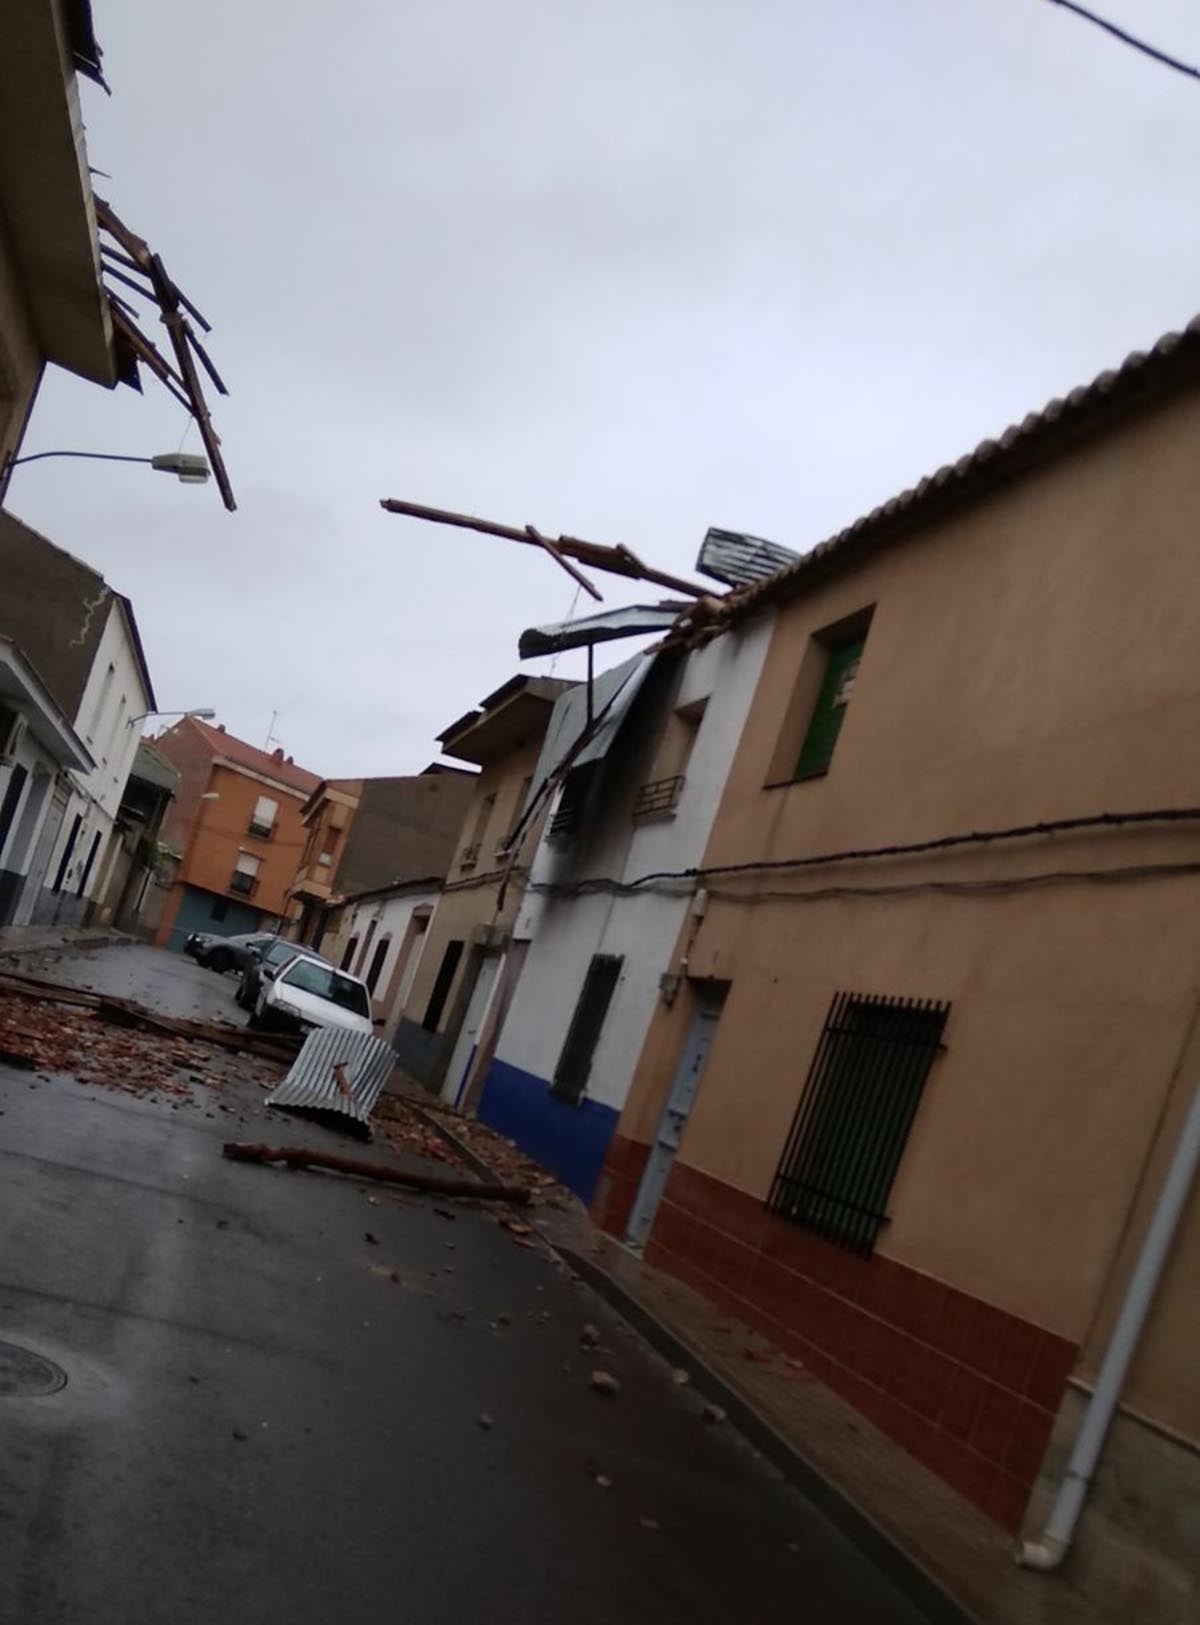 Efectos del tornado en Villarrubia de los Ojos